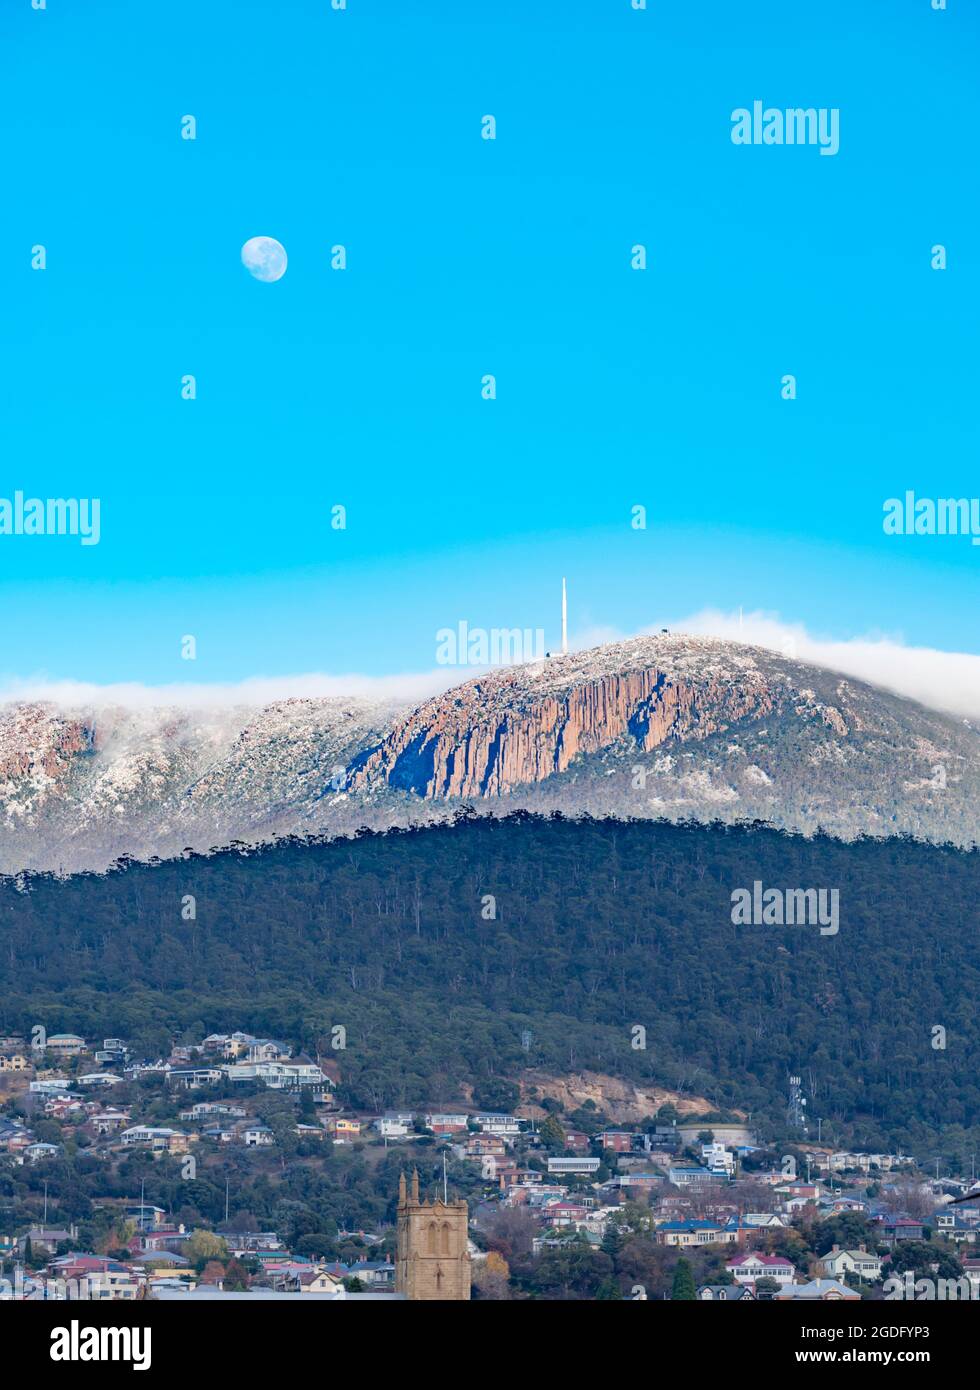 Con la luna ancora su una coperta di nuvola di mattina presto rotola sopra Kunanyi (Monte Wellington) verso Hobart, la capitale della Tasmania in Australia Foto Stock